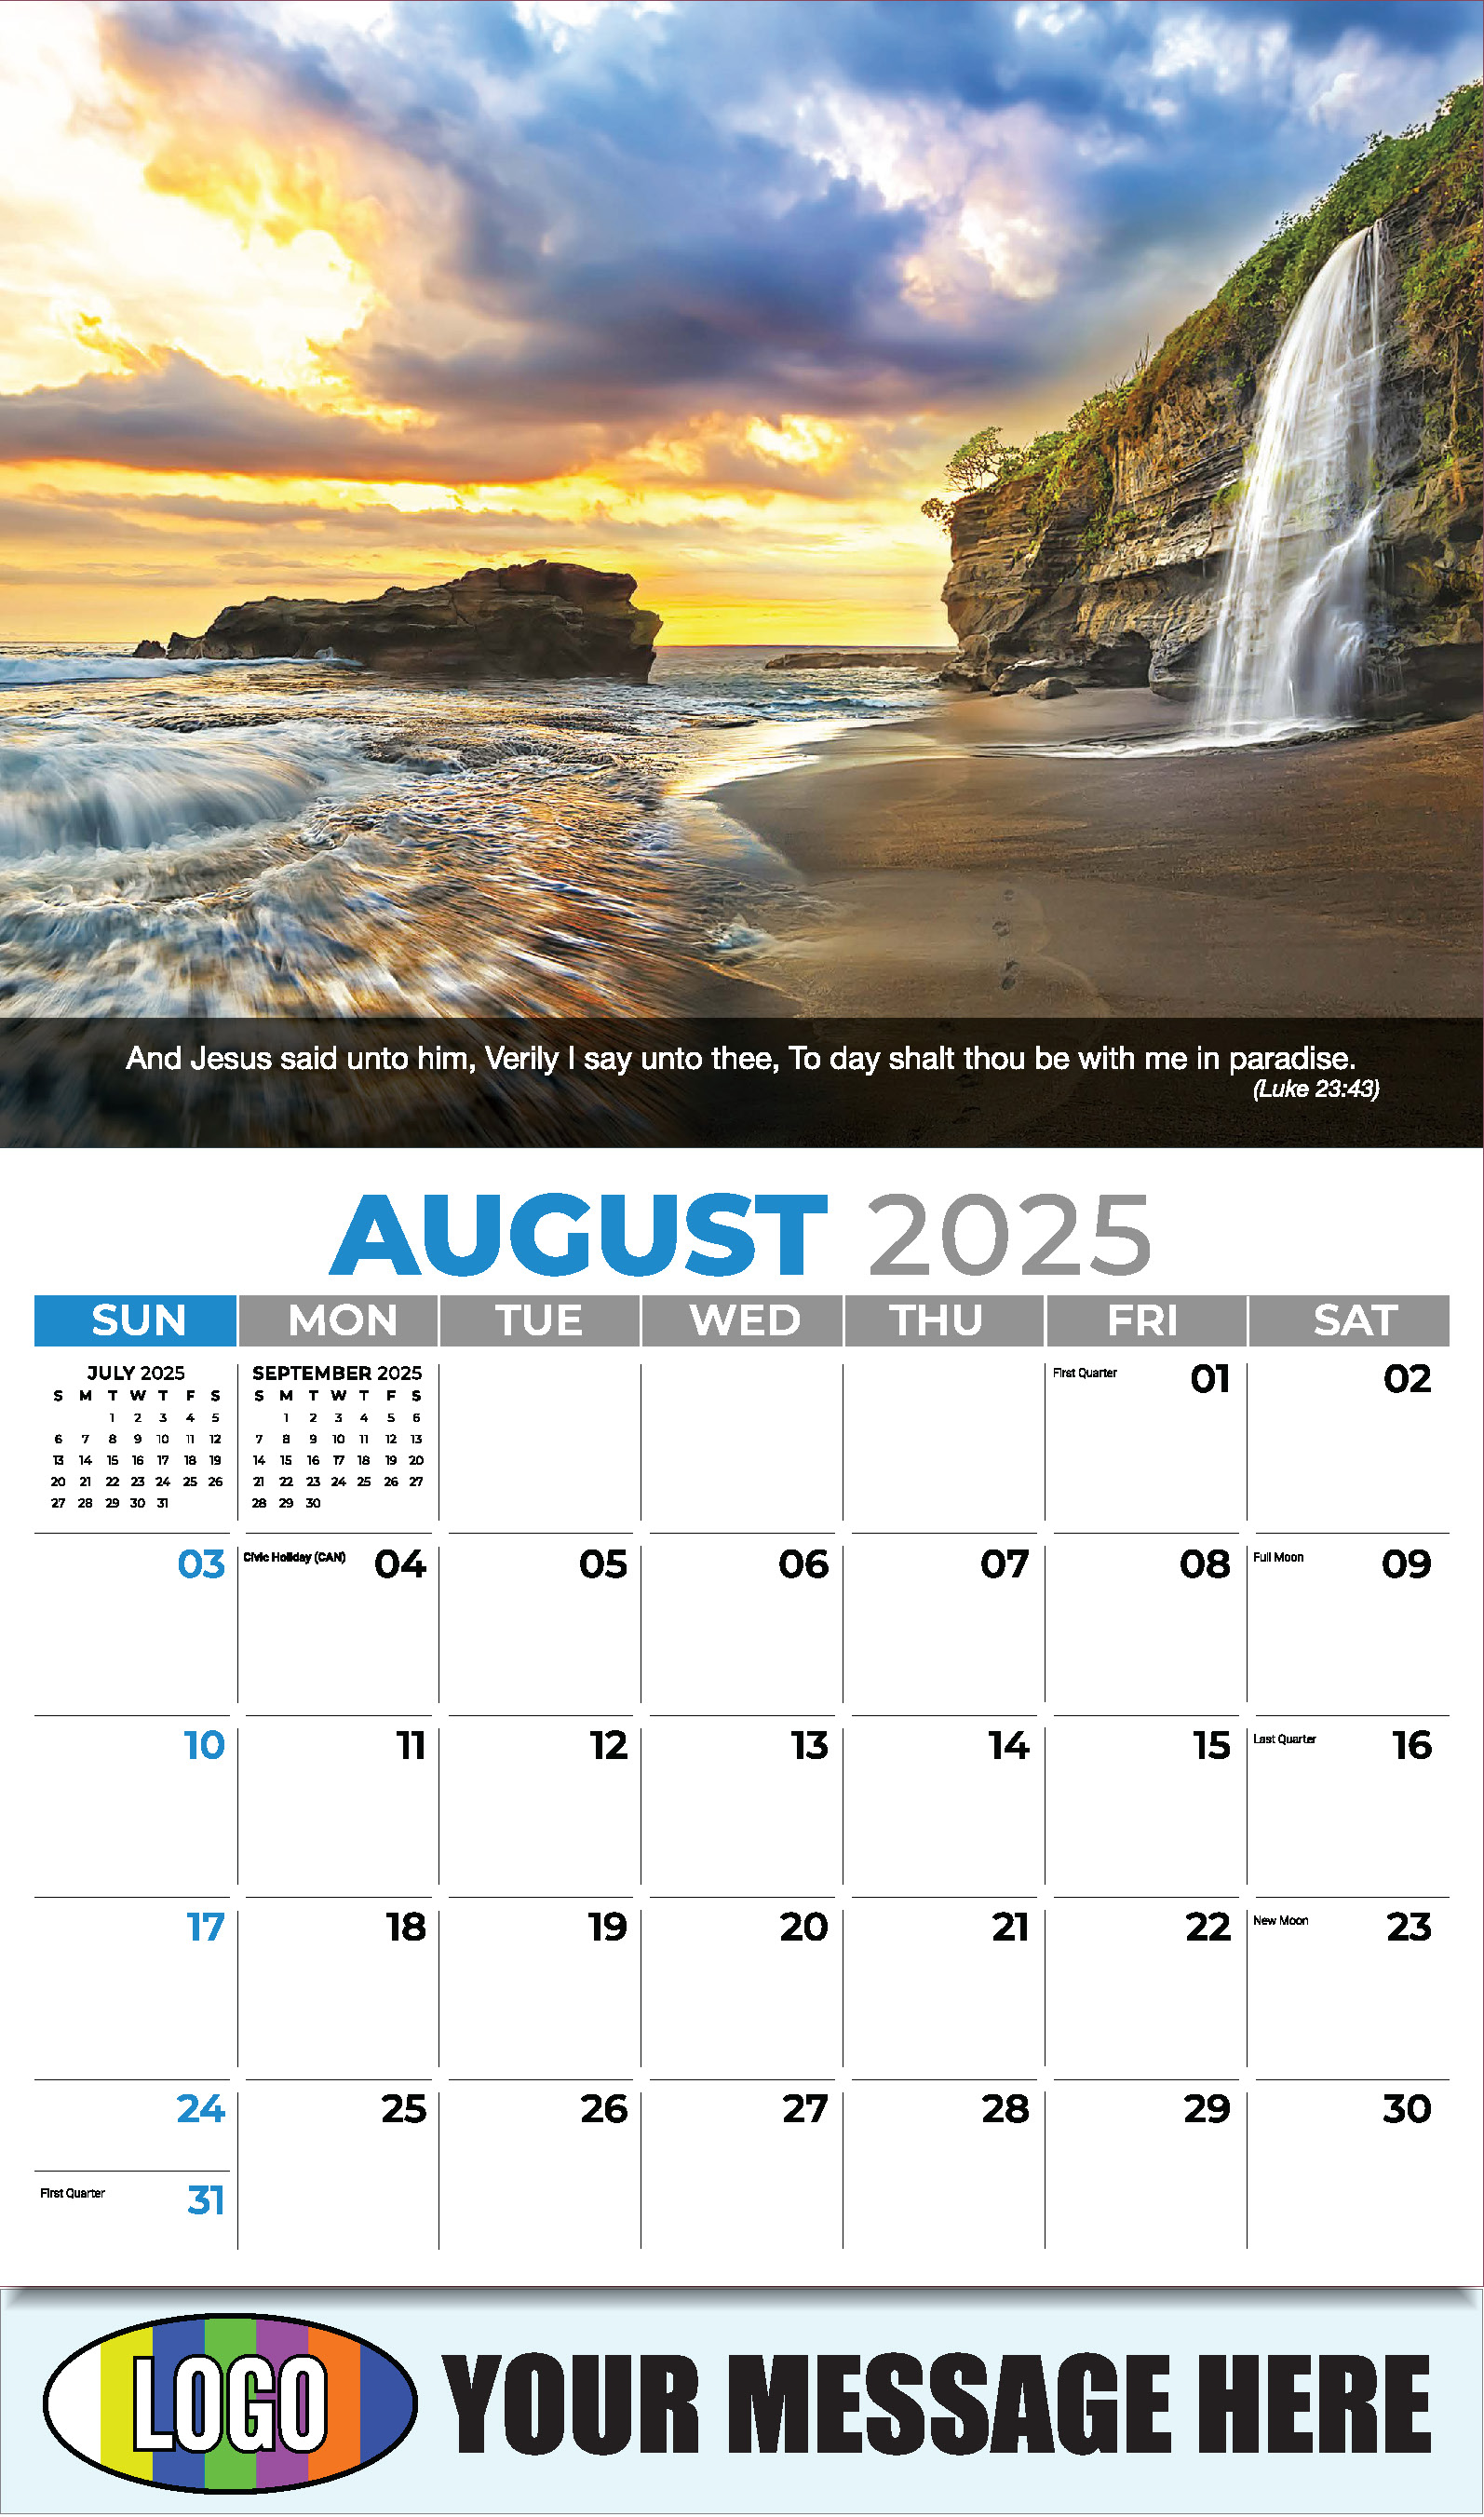 Faith Passages 2025 Christian Business Advertising Calendar - August